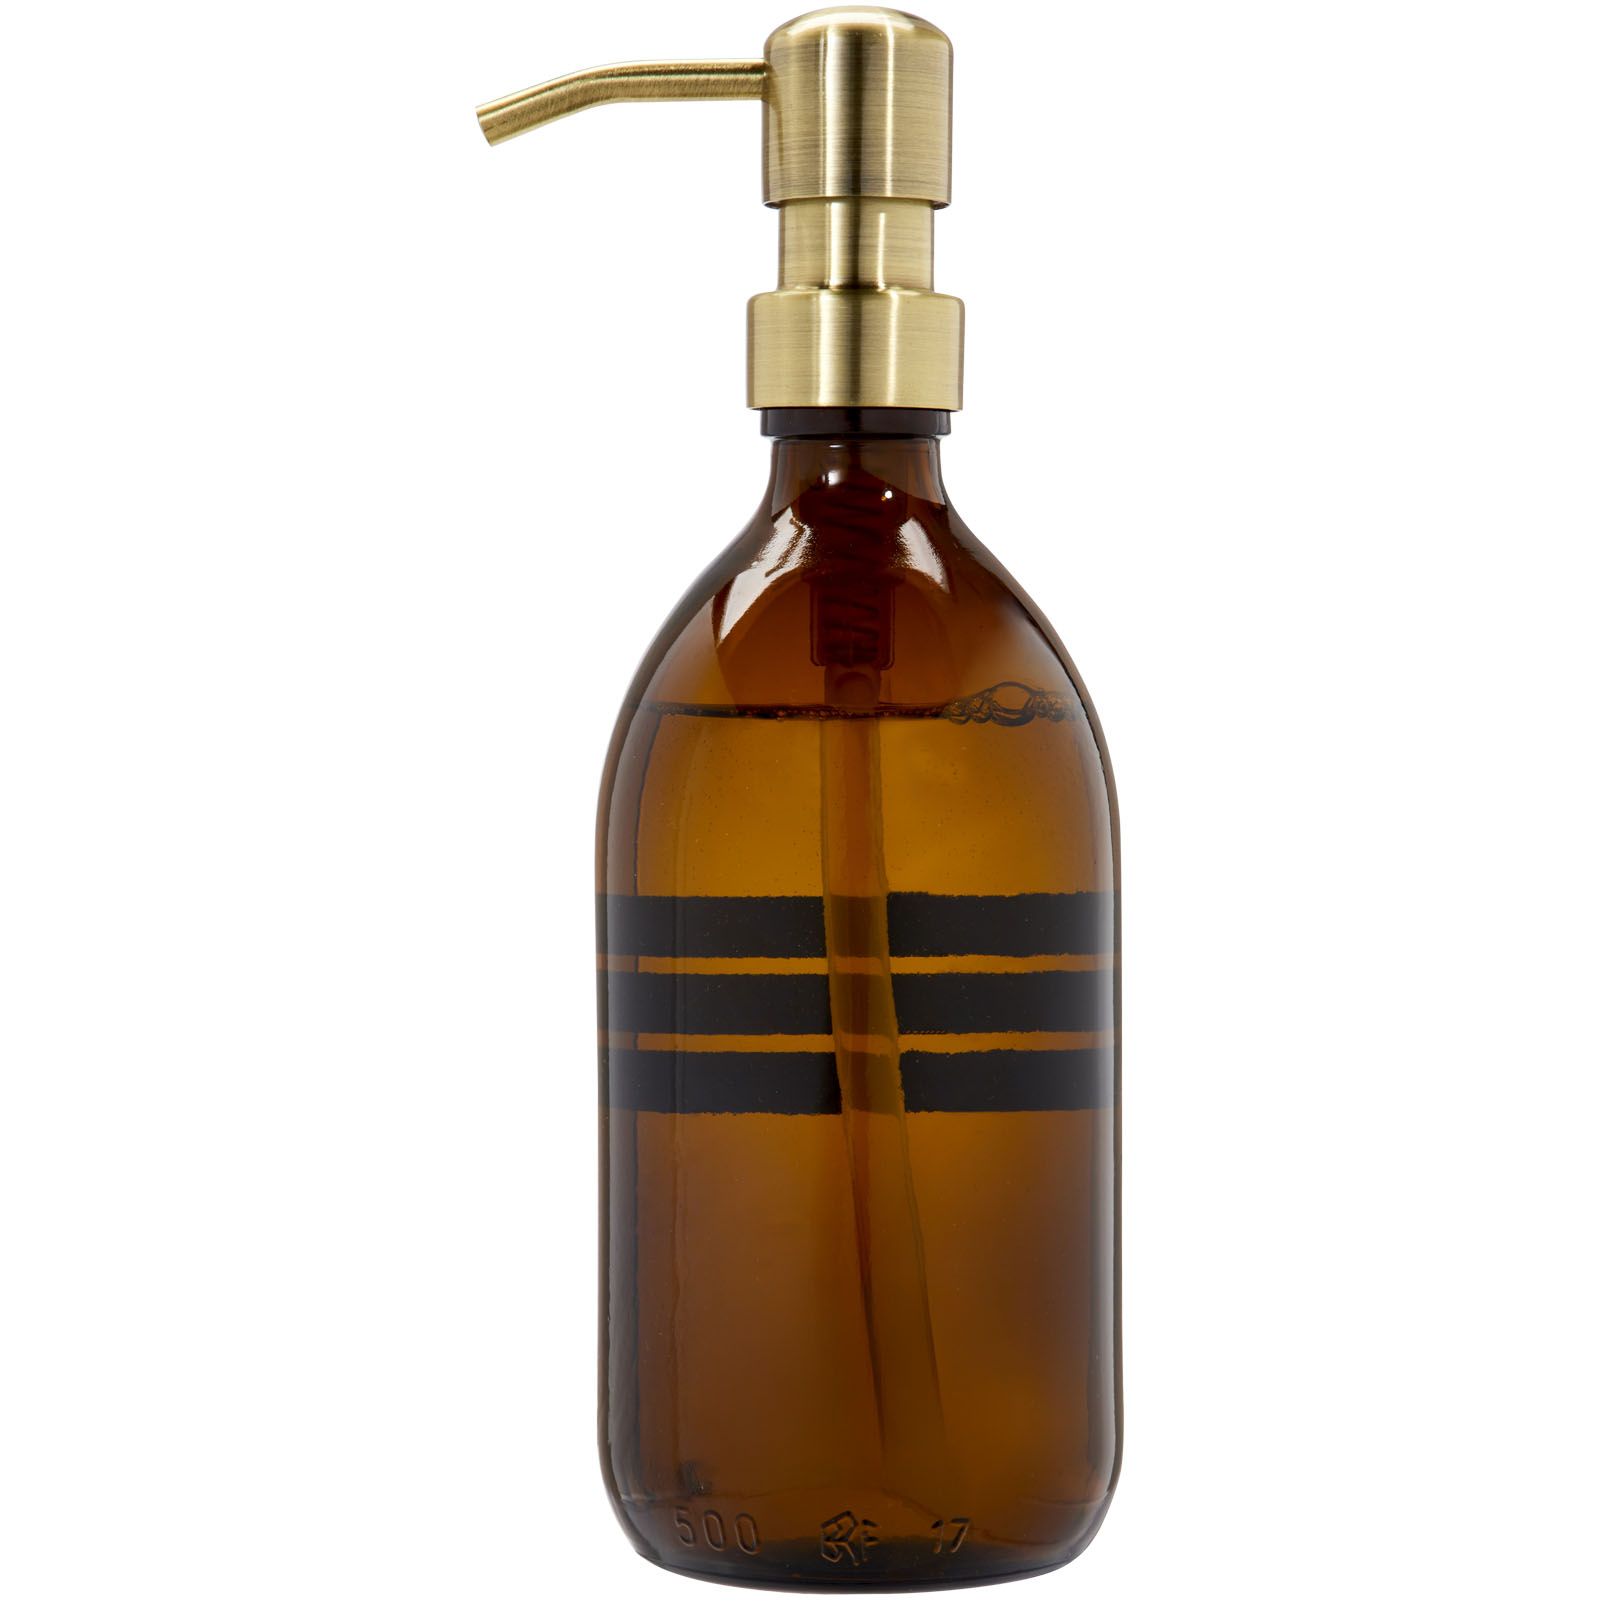 Hygiène personnelle publicitaires -  Distributeur de savon pour les mains WELLmarkBubbles de 500 ml - 2